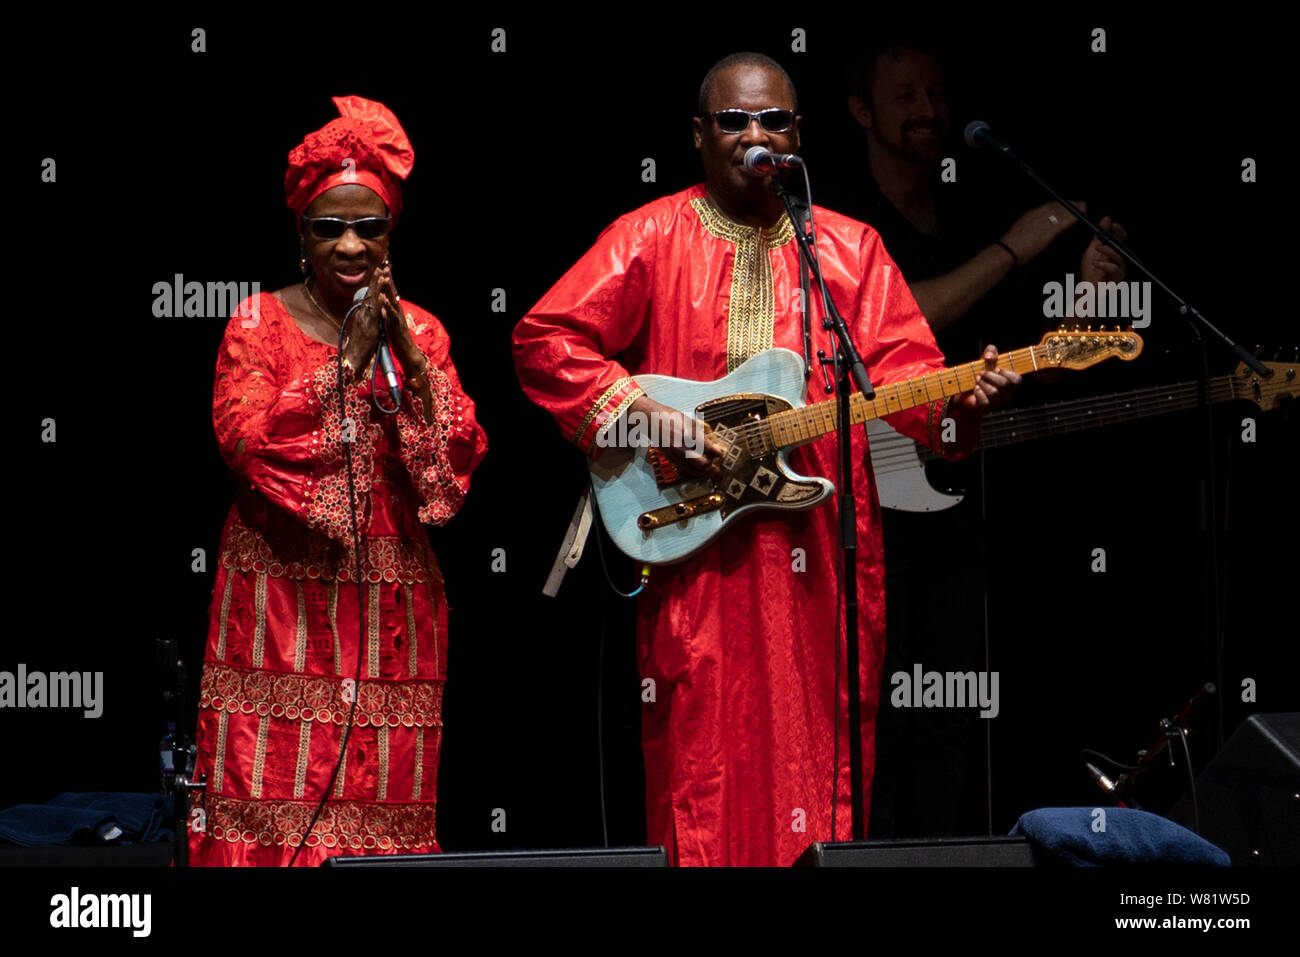 Edinburgh, Ecosse, Royaume-Uni. 7 août 2019. Amadou et Mariam à la Usher Hall dans un concert du Festival International d'Édimbourg. Photo Amadou & Mariam. Crédit ; Iain Masterton/Alamy Live News Banque D'Images